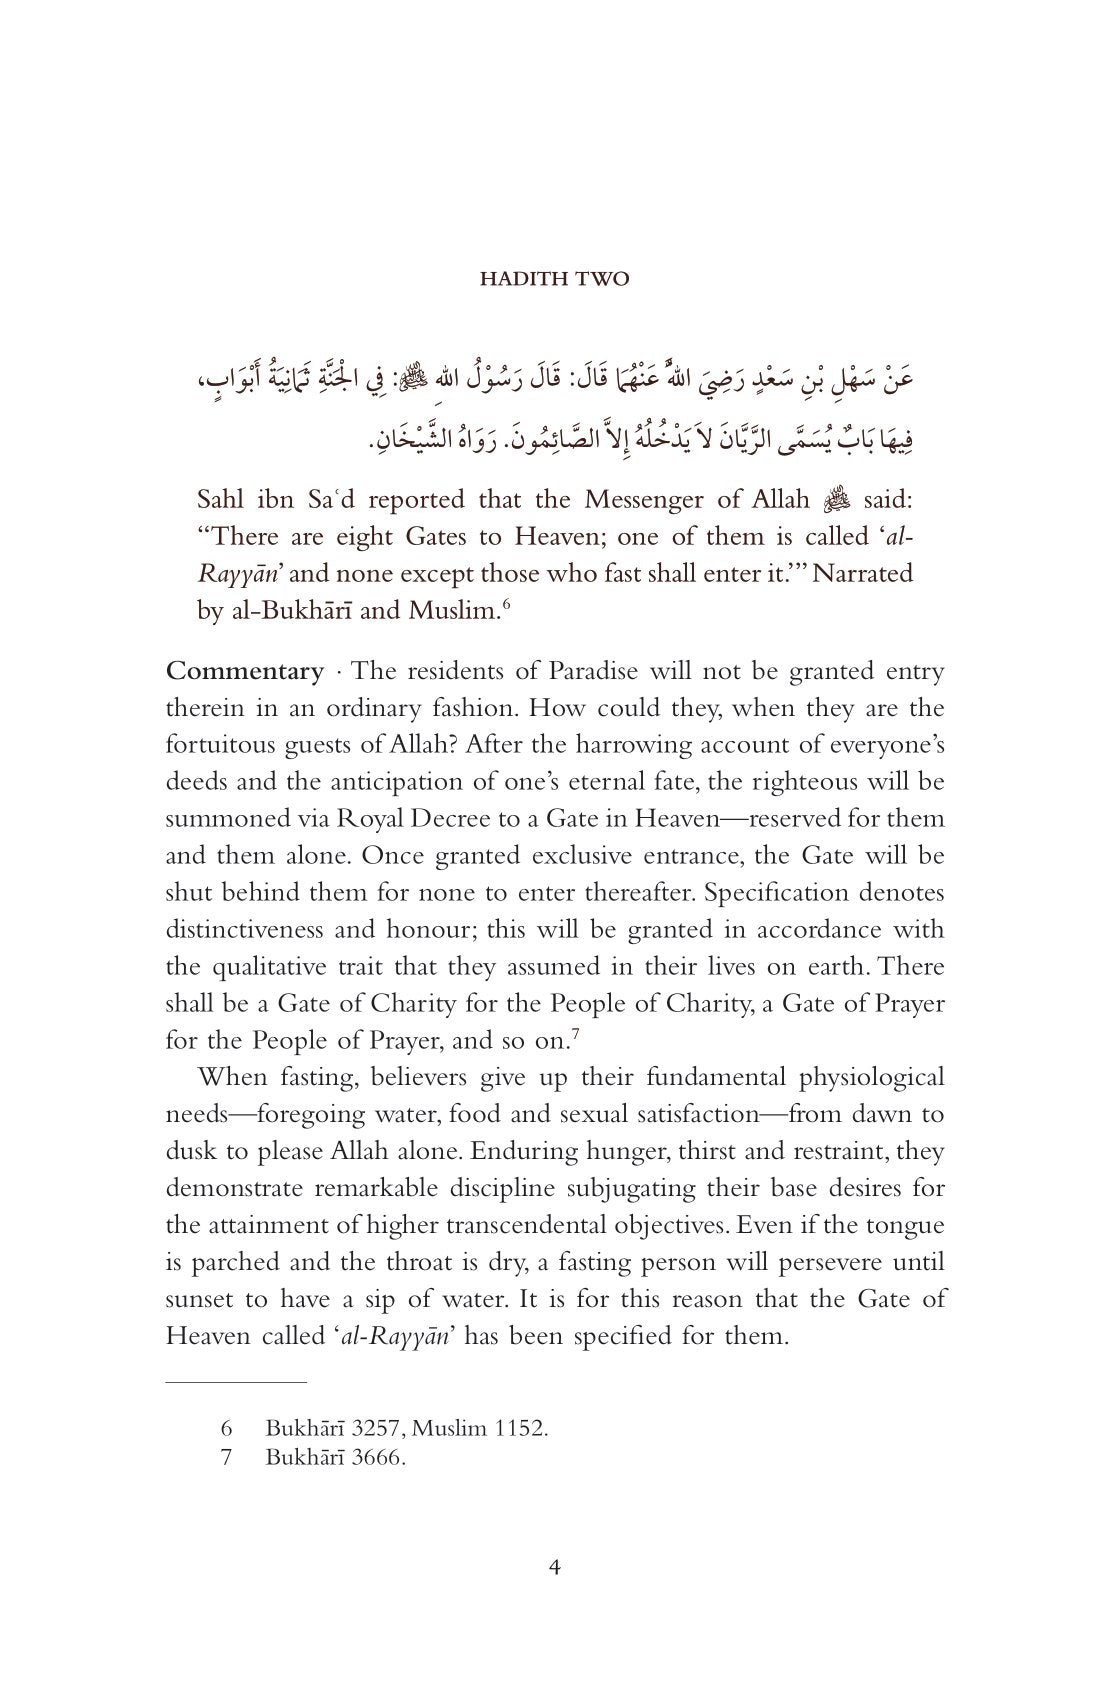 Bundle of 10 | Al-Arba'in On Fasting and Ramadan